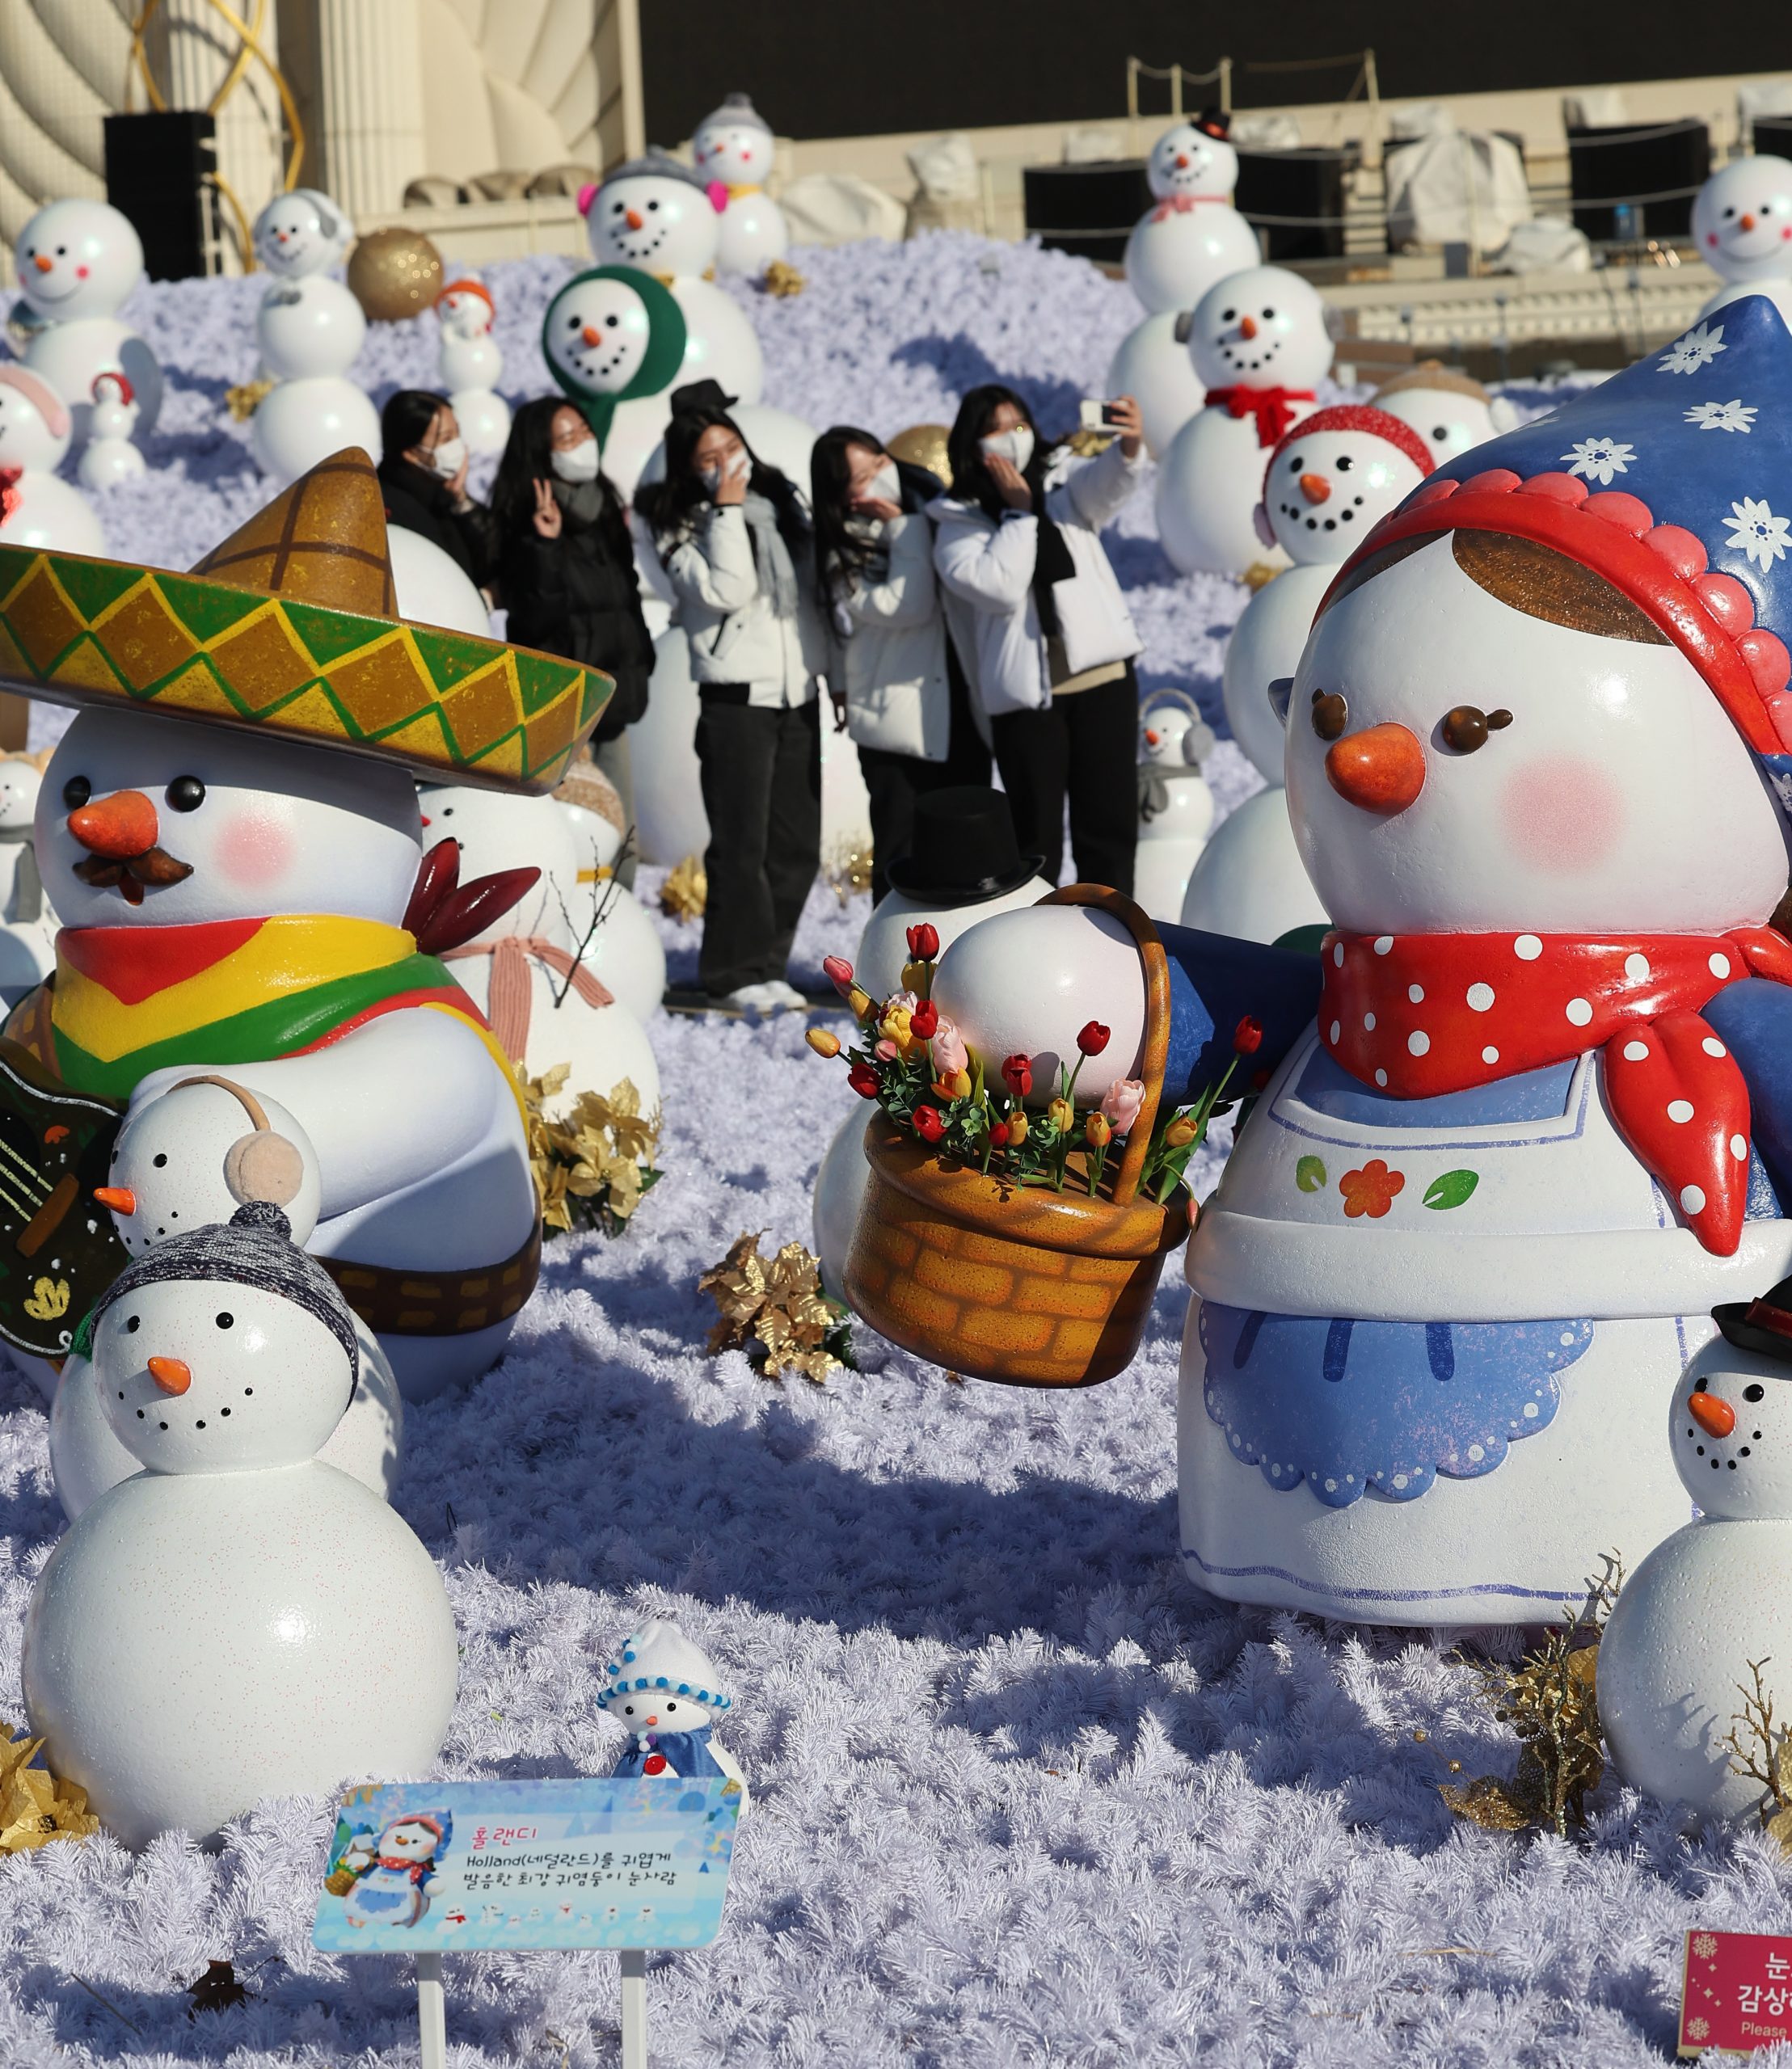 拚图SOUTH KOREA SNOWMEN:'Snowman World' in Seoul